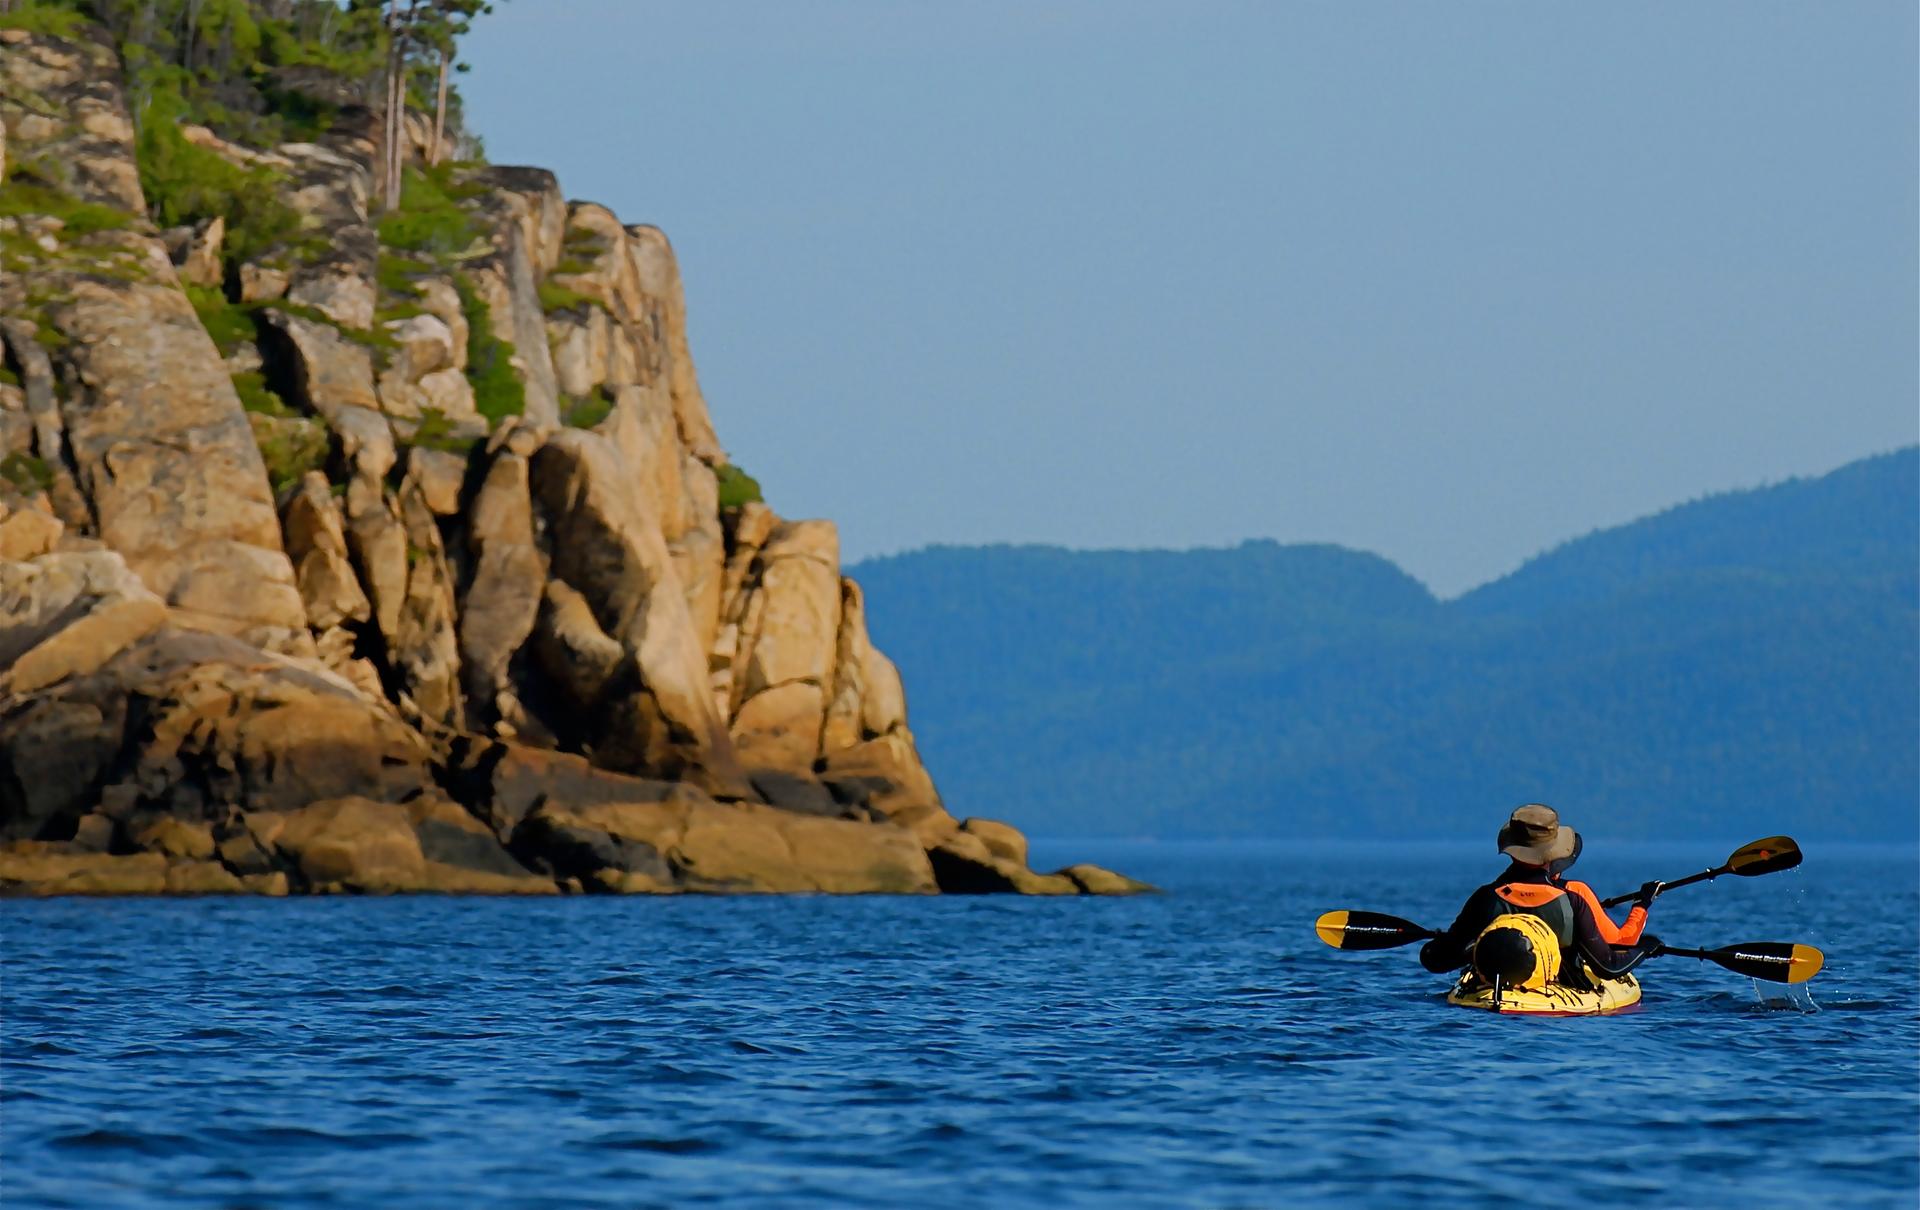 Kayaking the Saguenay Fjord